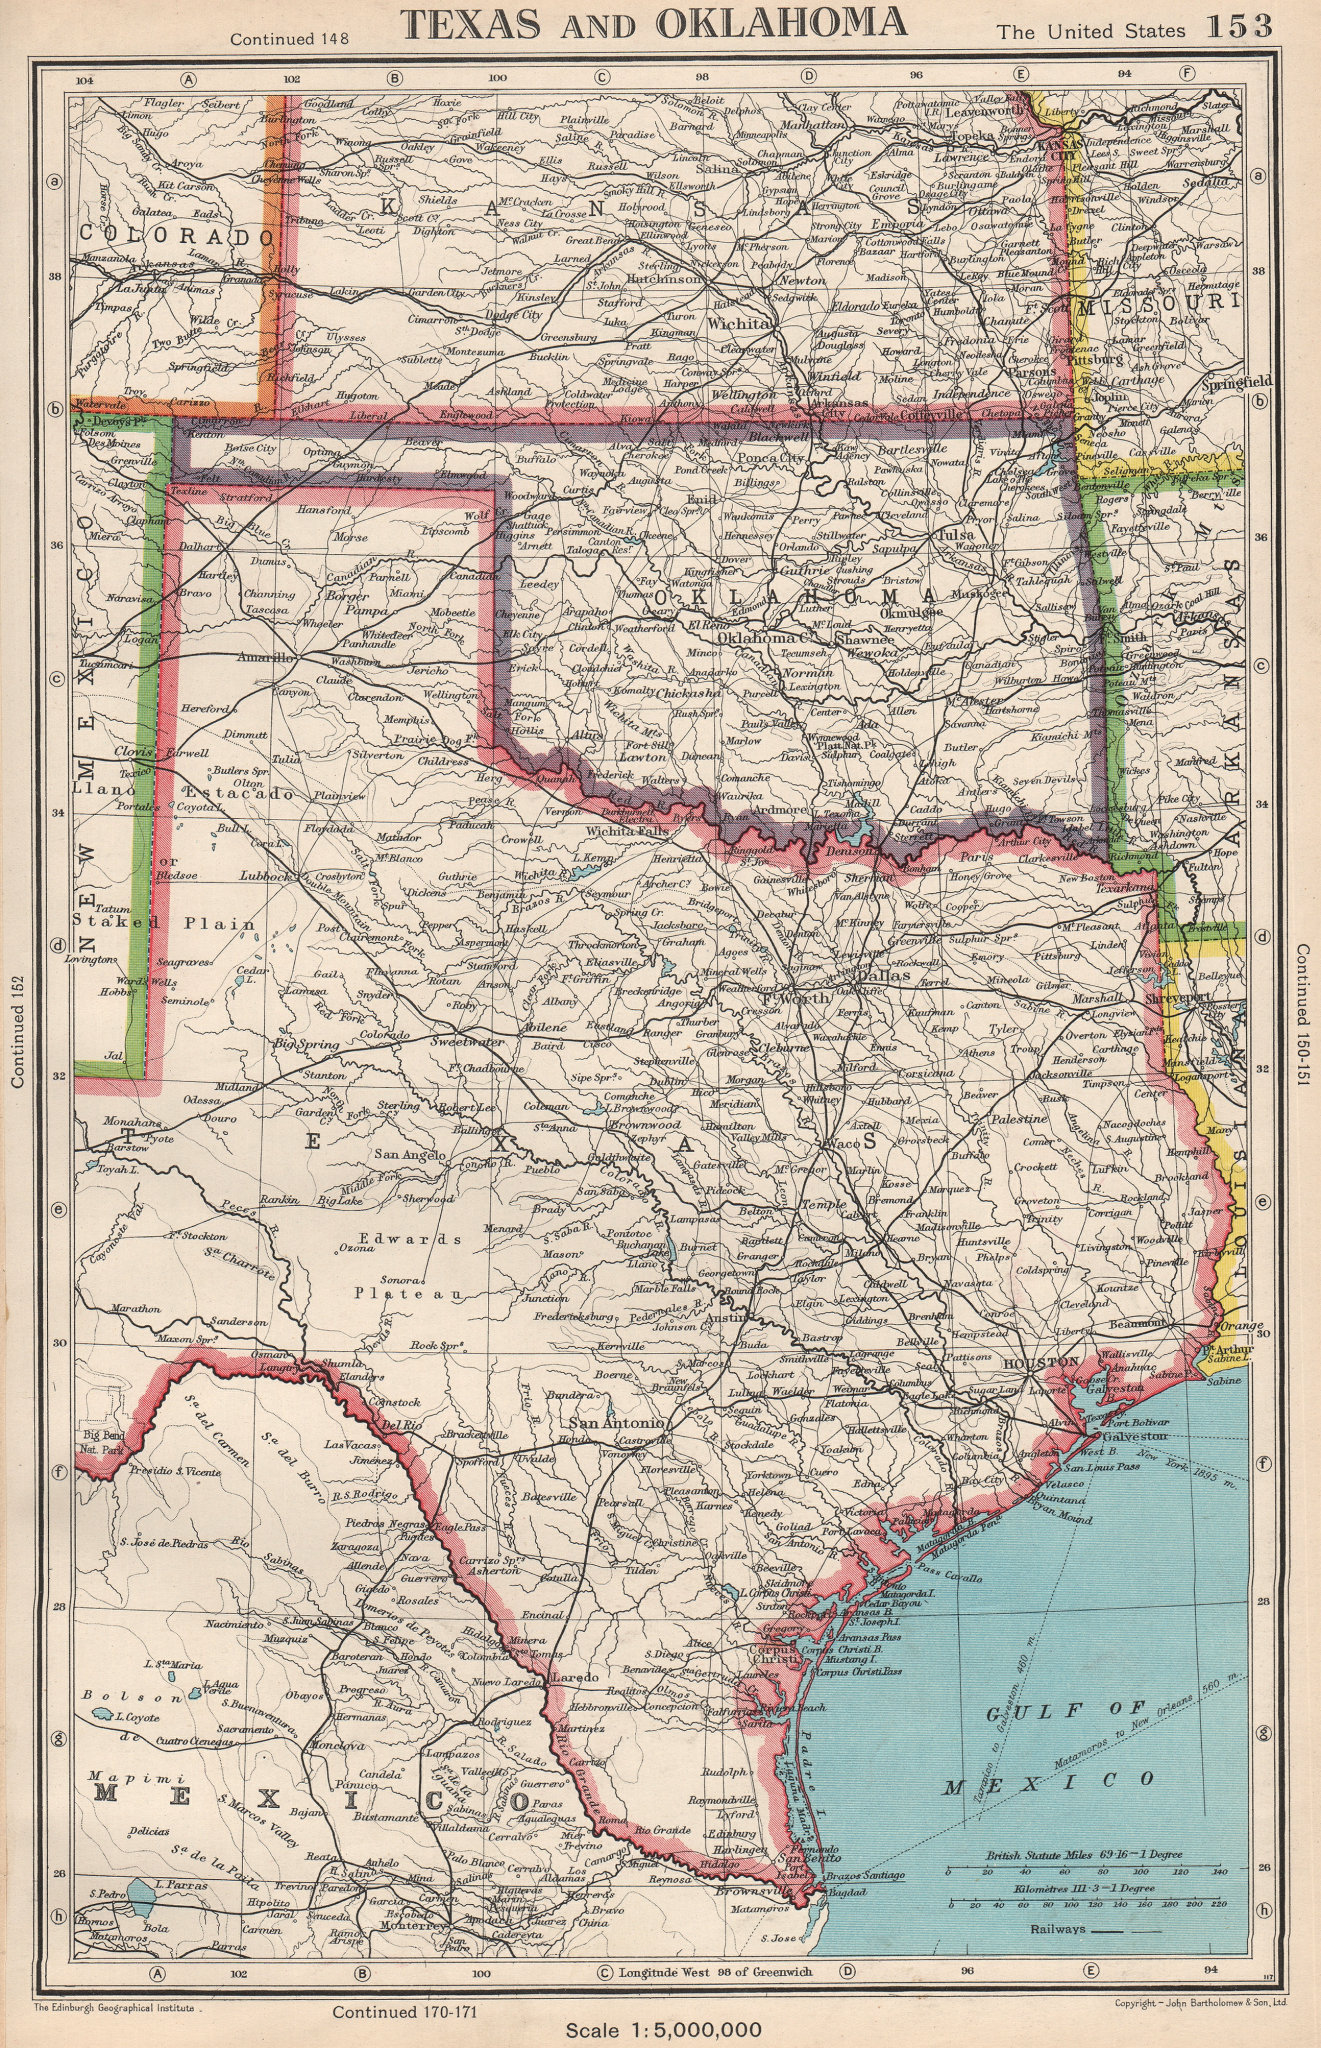 Associate Product TEXAS AND OKLAHOMA. USA state map. BARTHOLOMEW 1952 old vintage plan chart